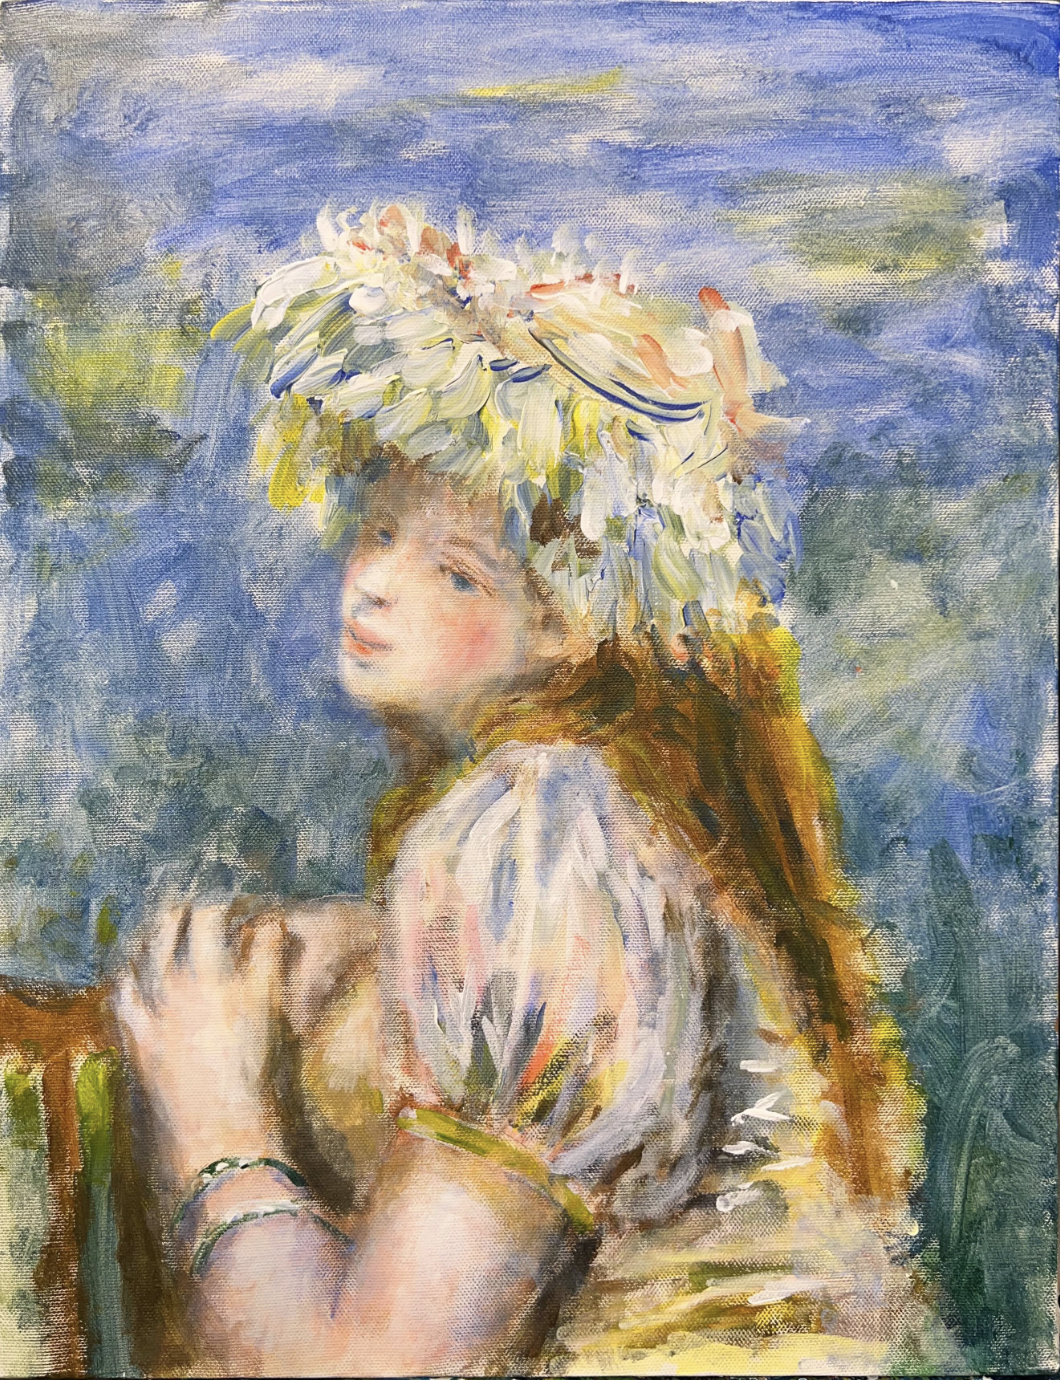 【日本橋】3月3日 (日) 18:00-21:00 | オーギュスト・ルノワール | レース帽子の少女 (Girl with a Lace Hat by Pierre-Auguste Renoir at Nihon-bashi)